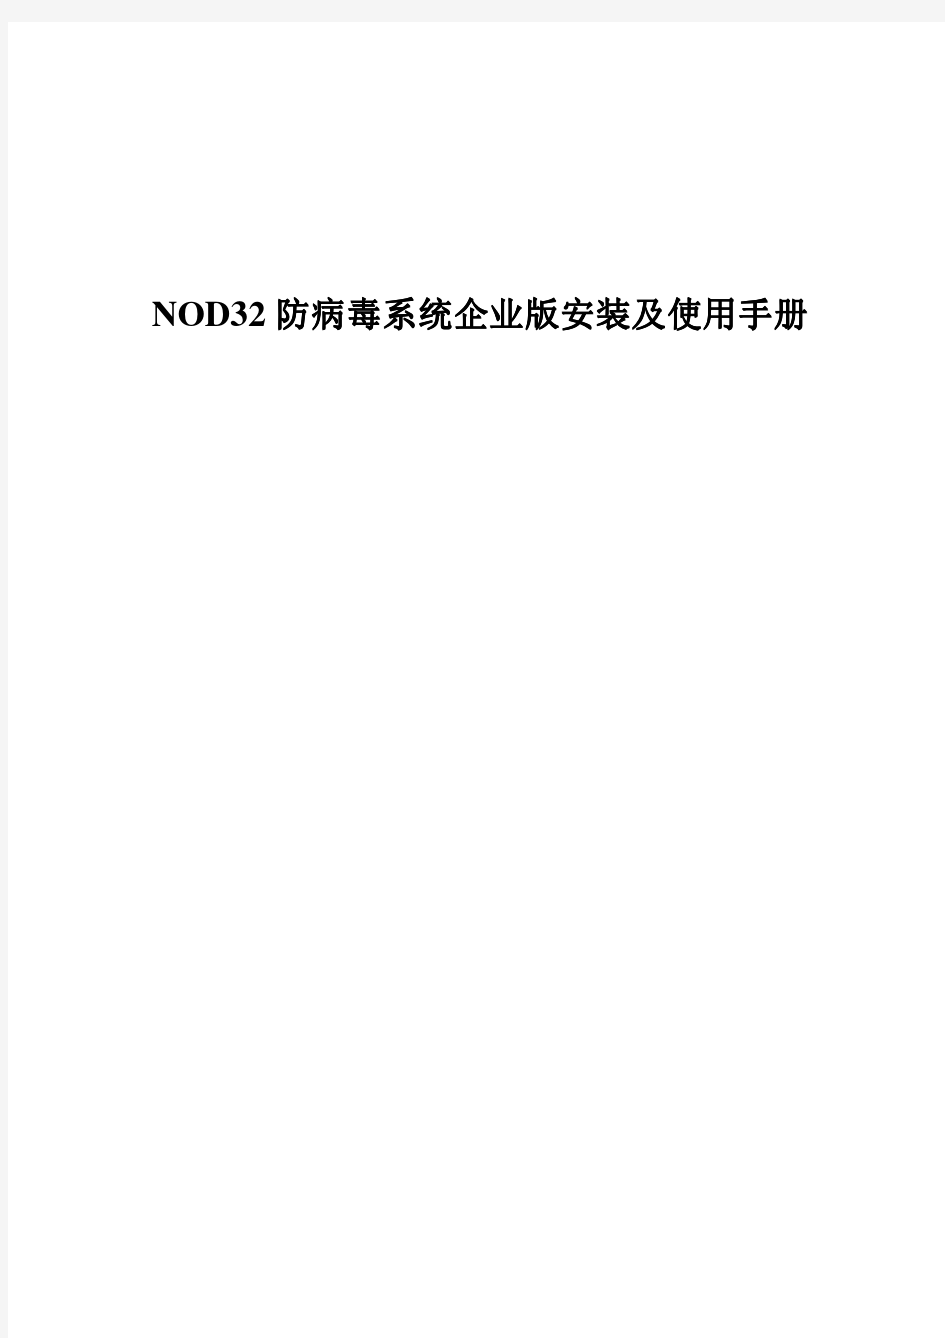 NOD32防病毒系统企业版安装跟使用手册